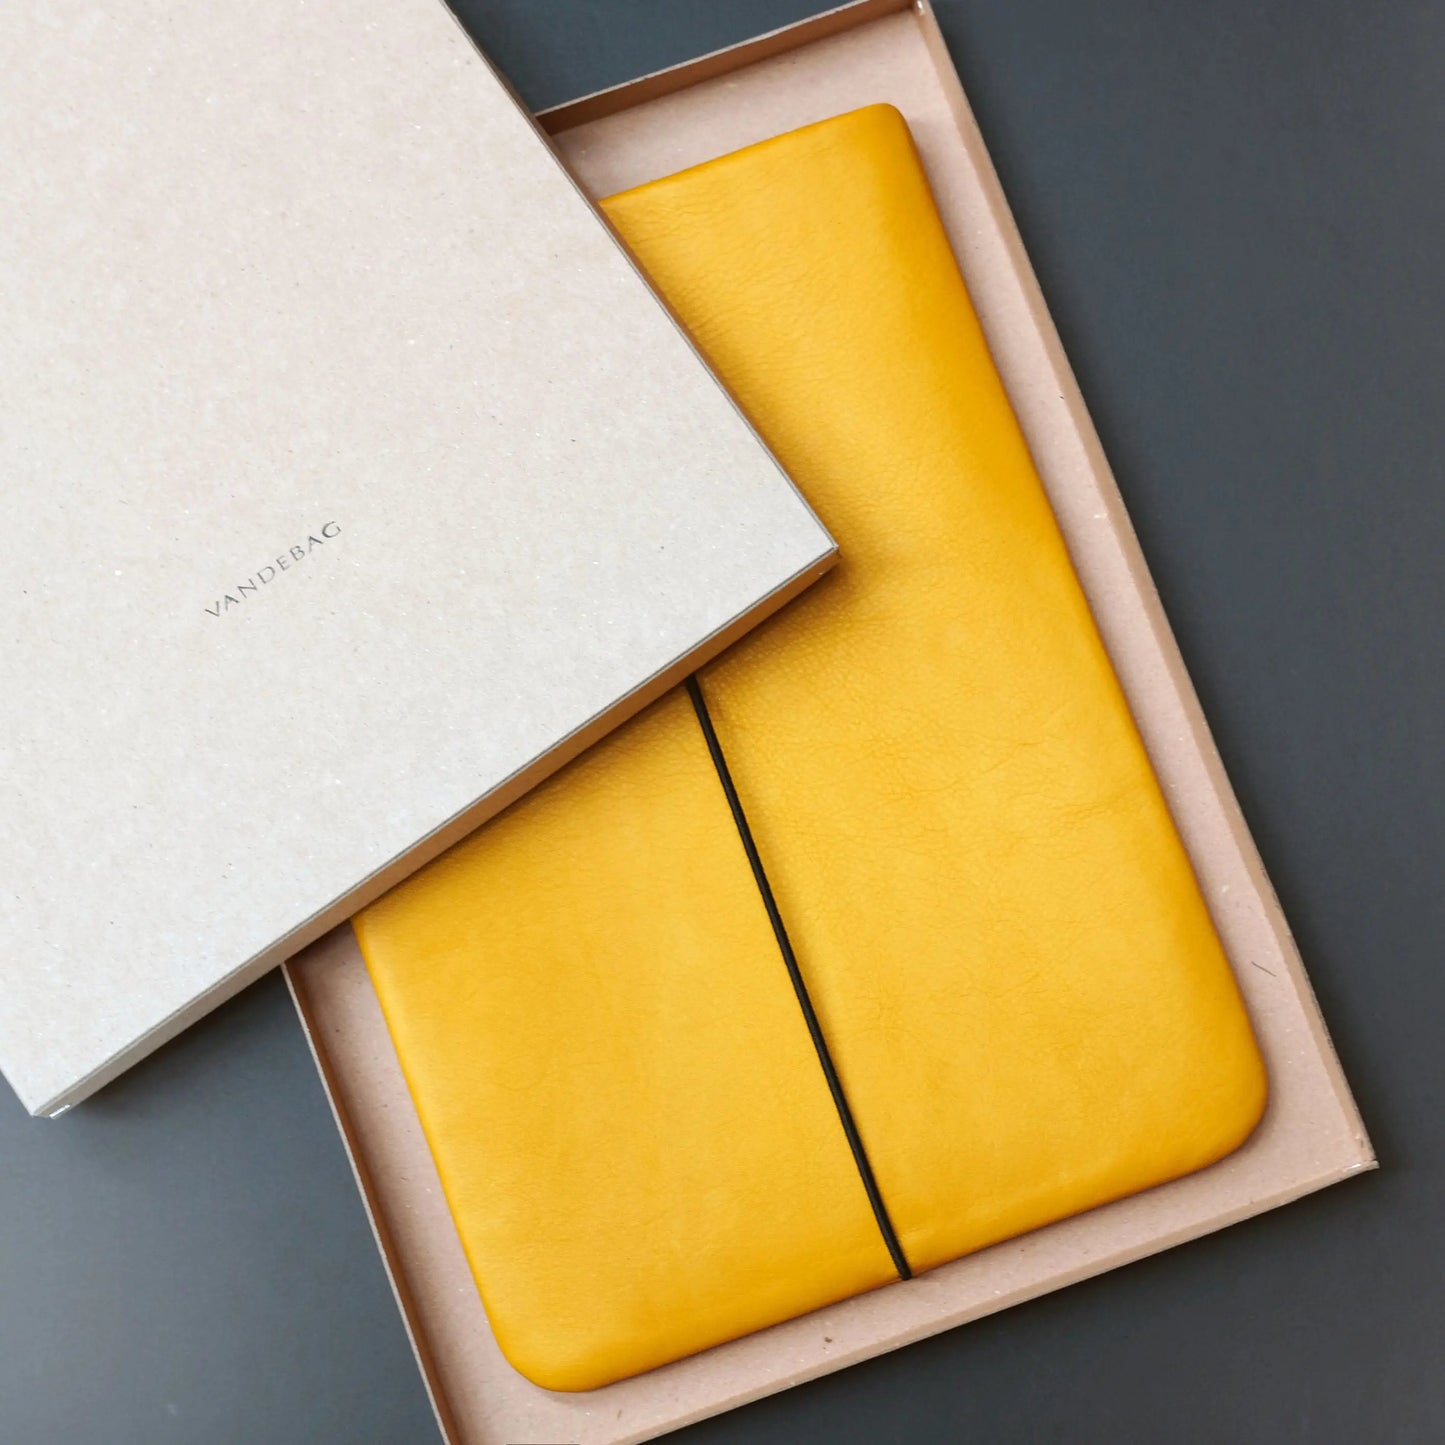 iPadhülle aus Leder in gelb, das in einem Produkkarton aus recycelter Pappe liegt